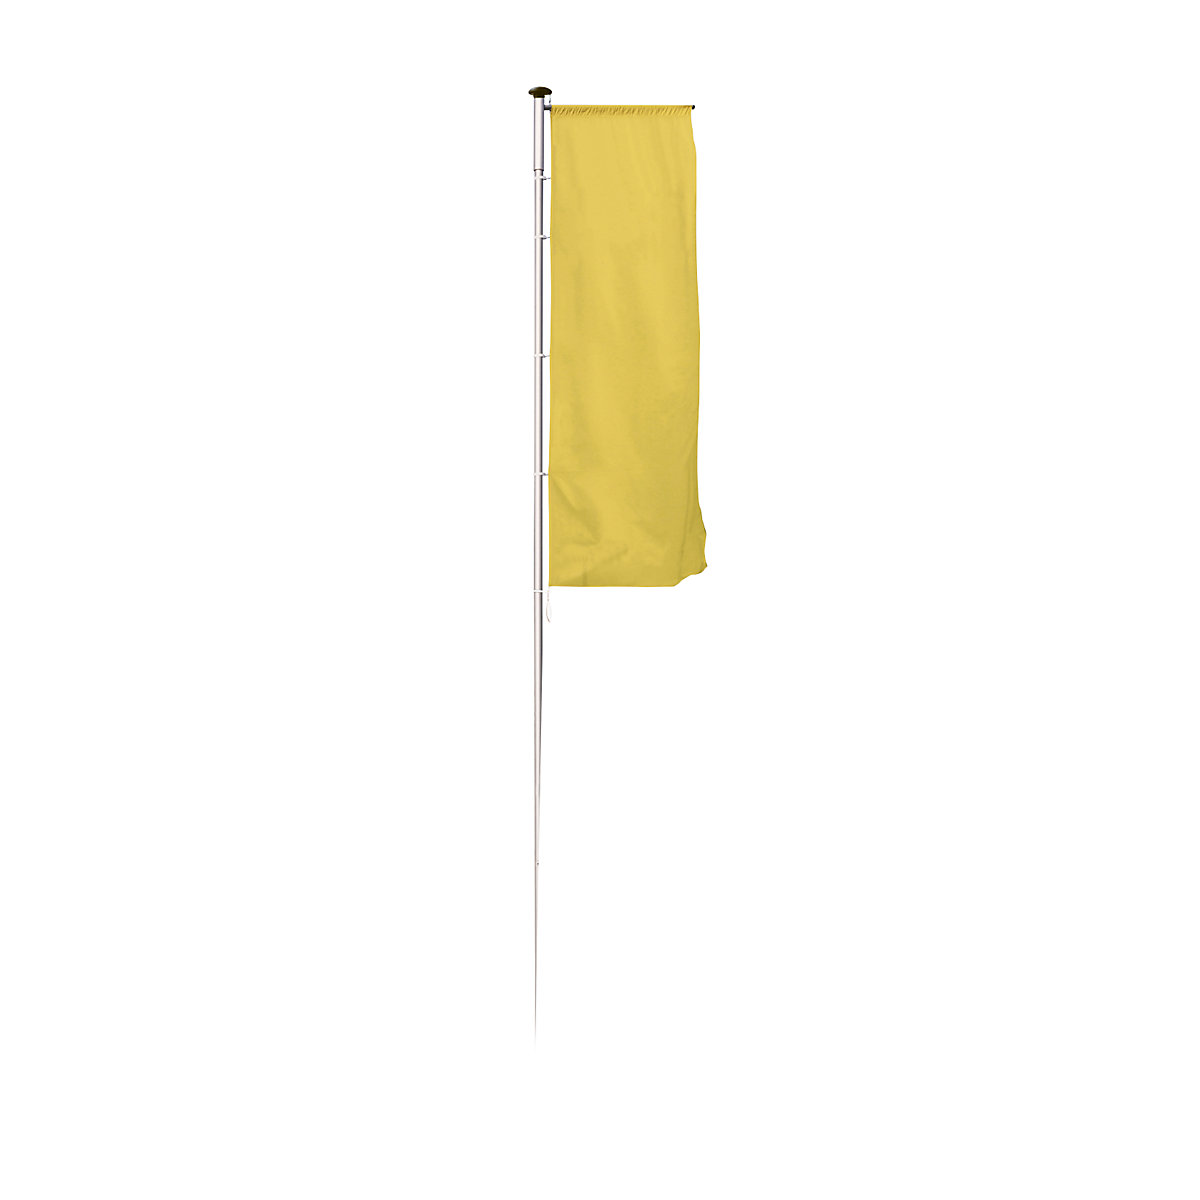 Mannus – Catarg din aluminiu pentru steaguri, PIRAT, cu braț, optimizat pentru transport, înălțime de la podea 8 m